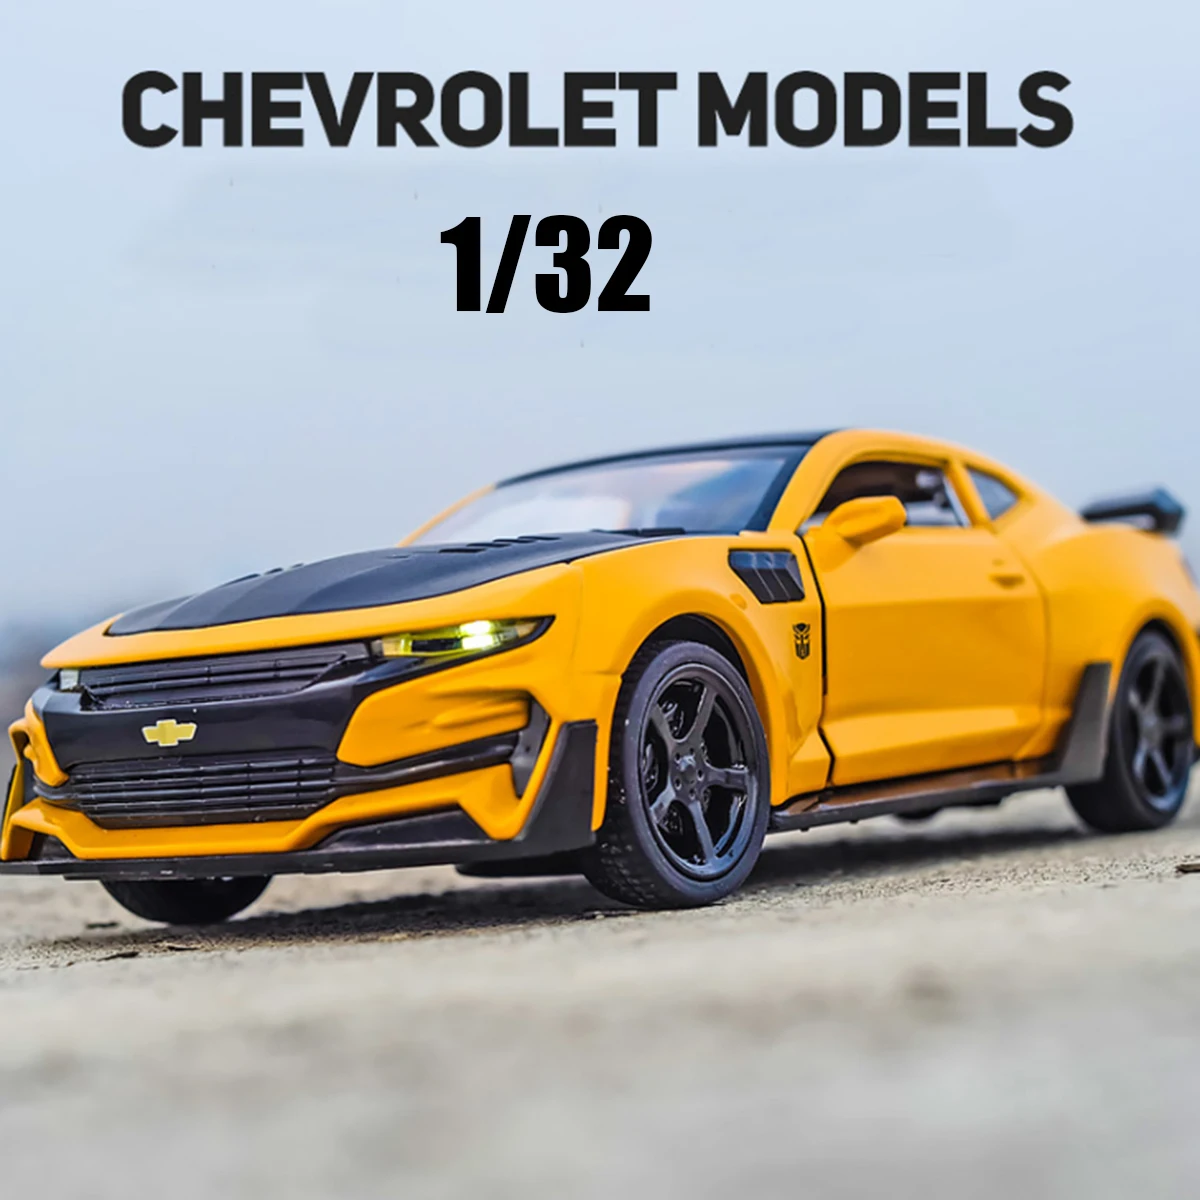 1/32 Chevrolet Camaro Diecasts ve Oyuncak Araçlar Alaşım Araba Modeli Koleksiyonu Oyuncaklar Çocuklar Için noel hediyesi мазинки Ücretsiz Kargo Görüntü 0